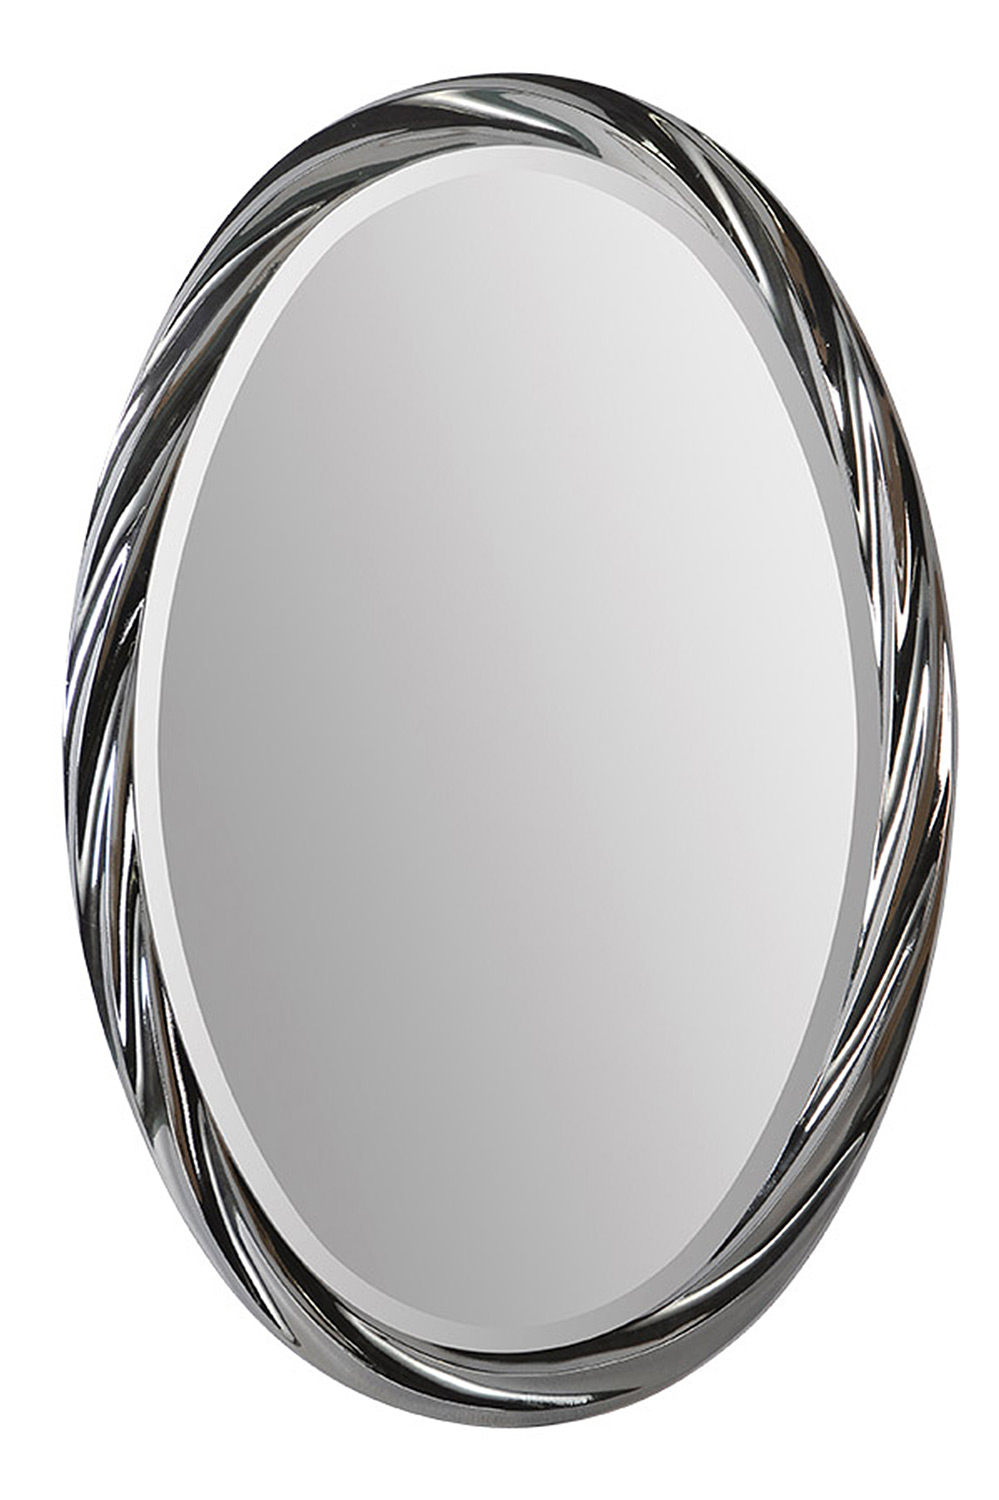 Ren-Wil Peronell Vertical Mirror